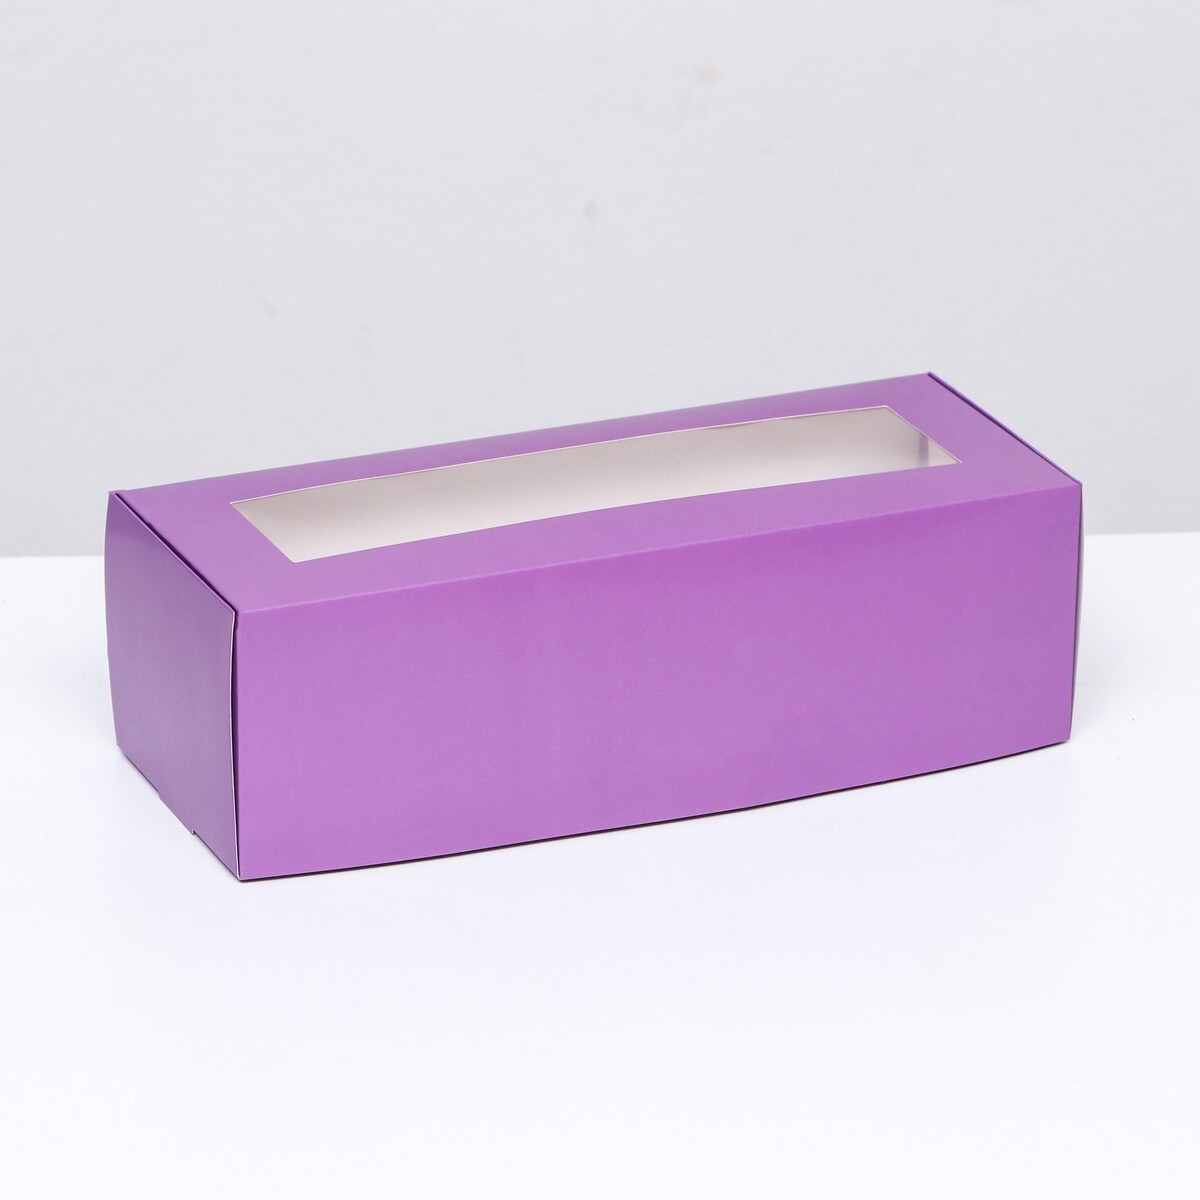 Коробка складная с окном под рулет, сиреневая, 26 х 10 х 8 см коробка под рулет белая 16 5 х 11 х 9 см